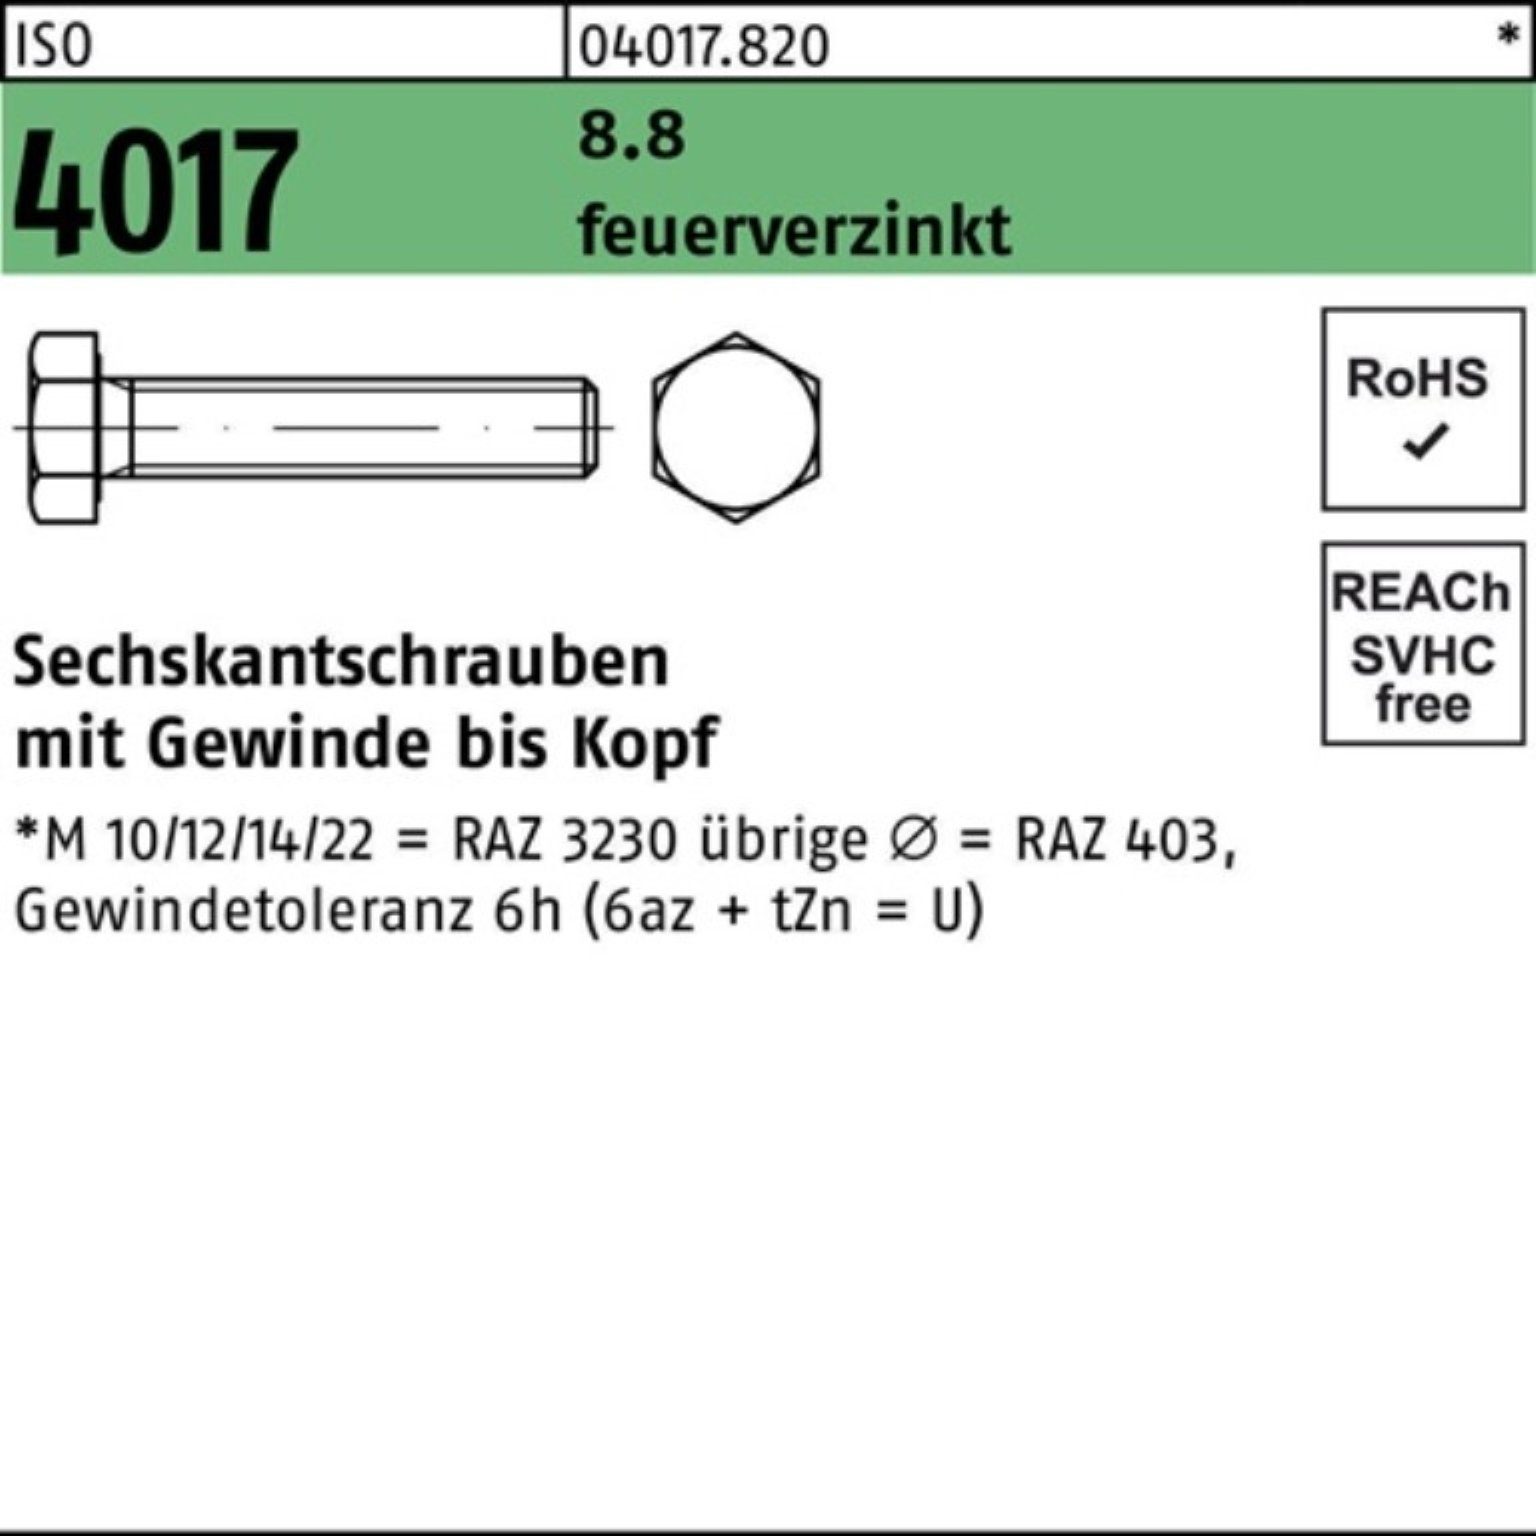 Bufab Sechskantschraube 100er Pack Sechskantschraube ISO 4017 VG M12x 16 8.8 feuerverz. 100 St